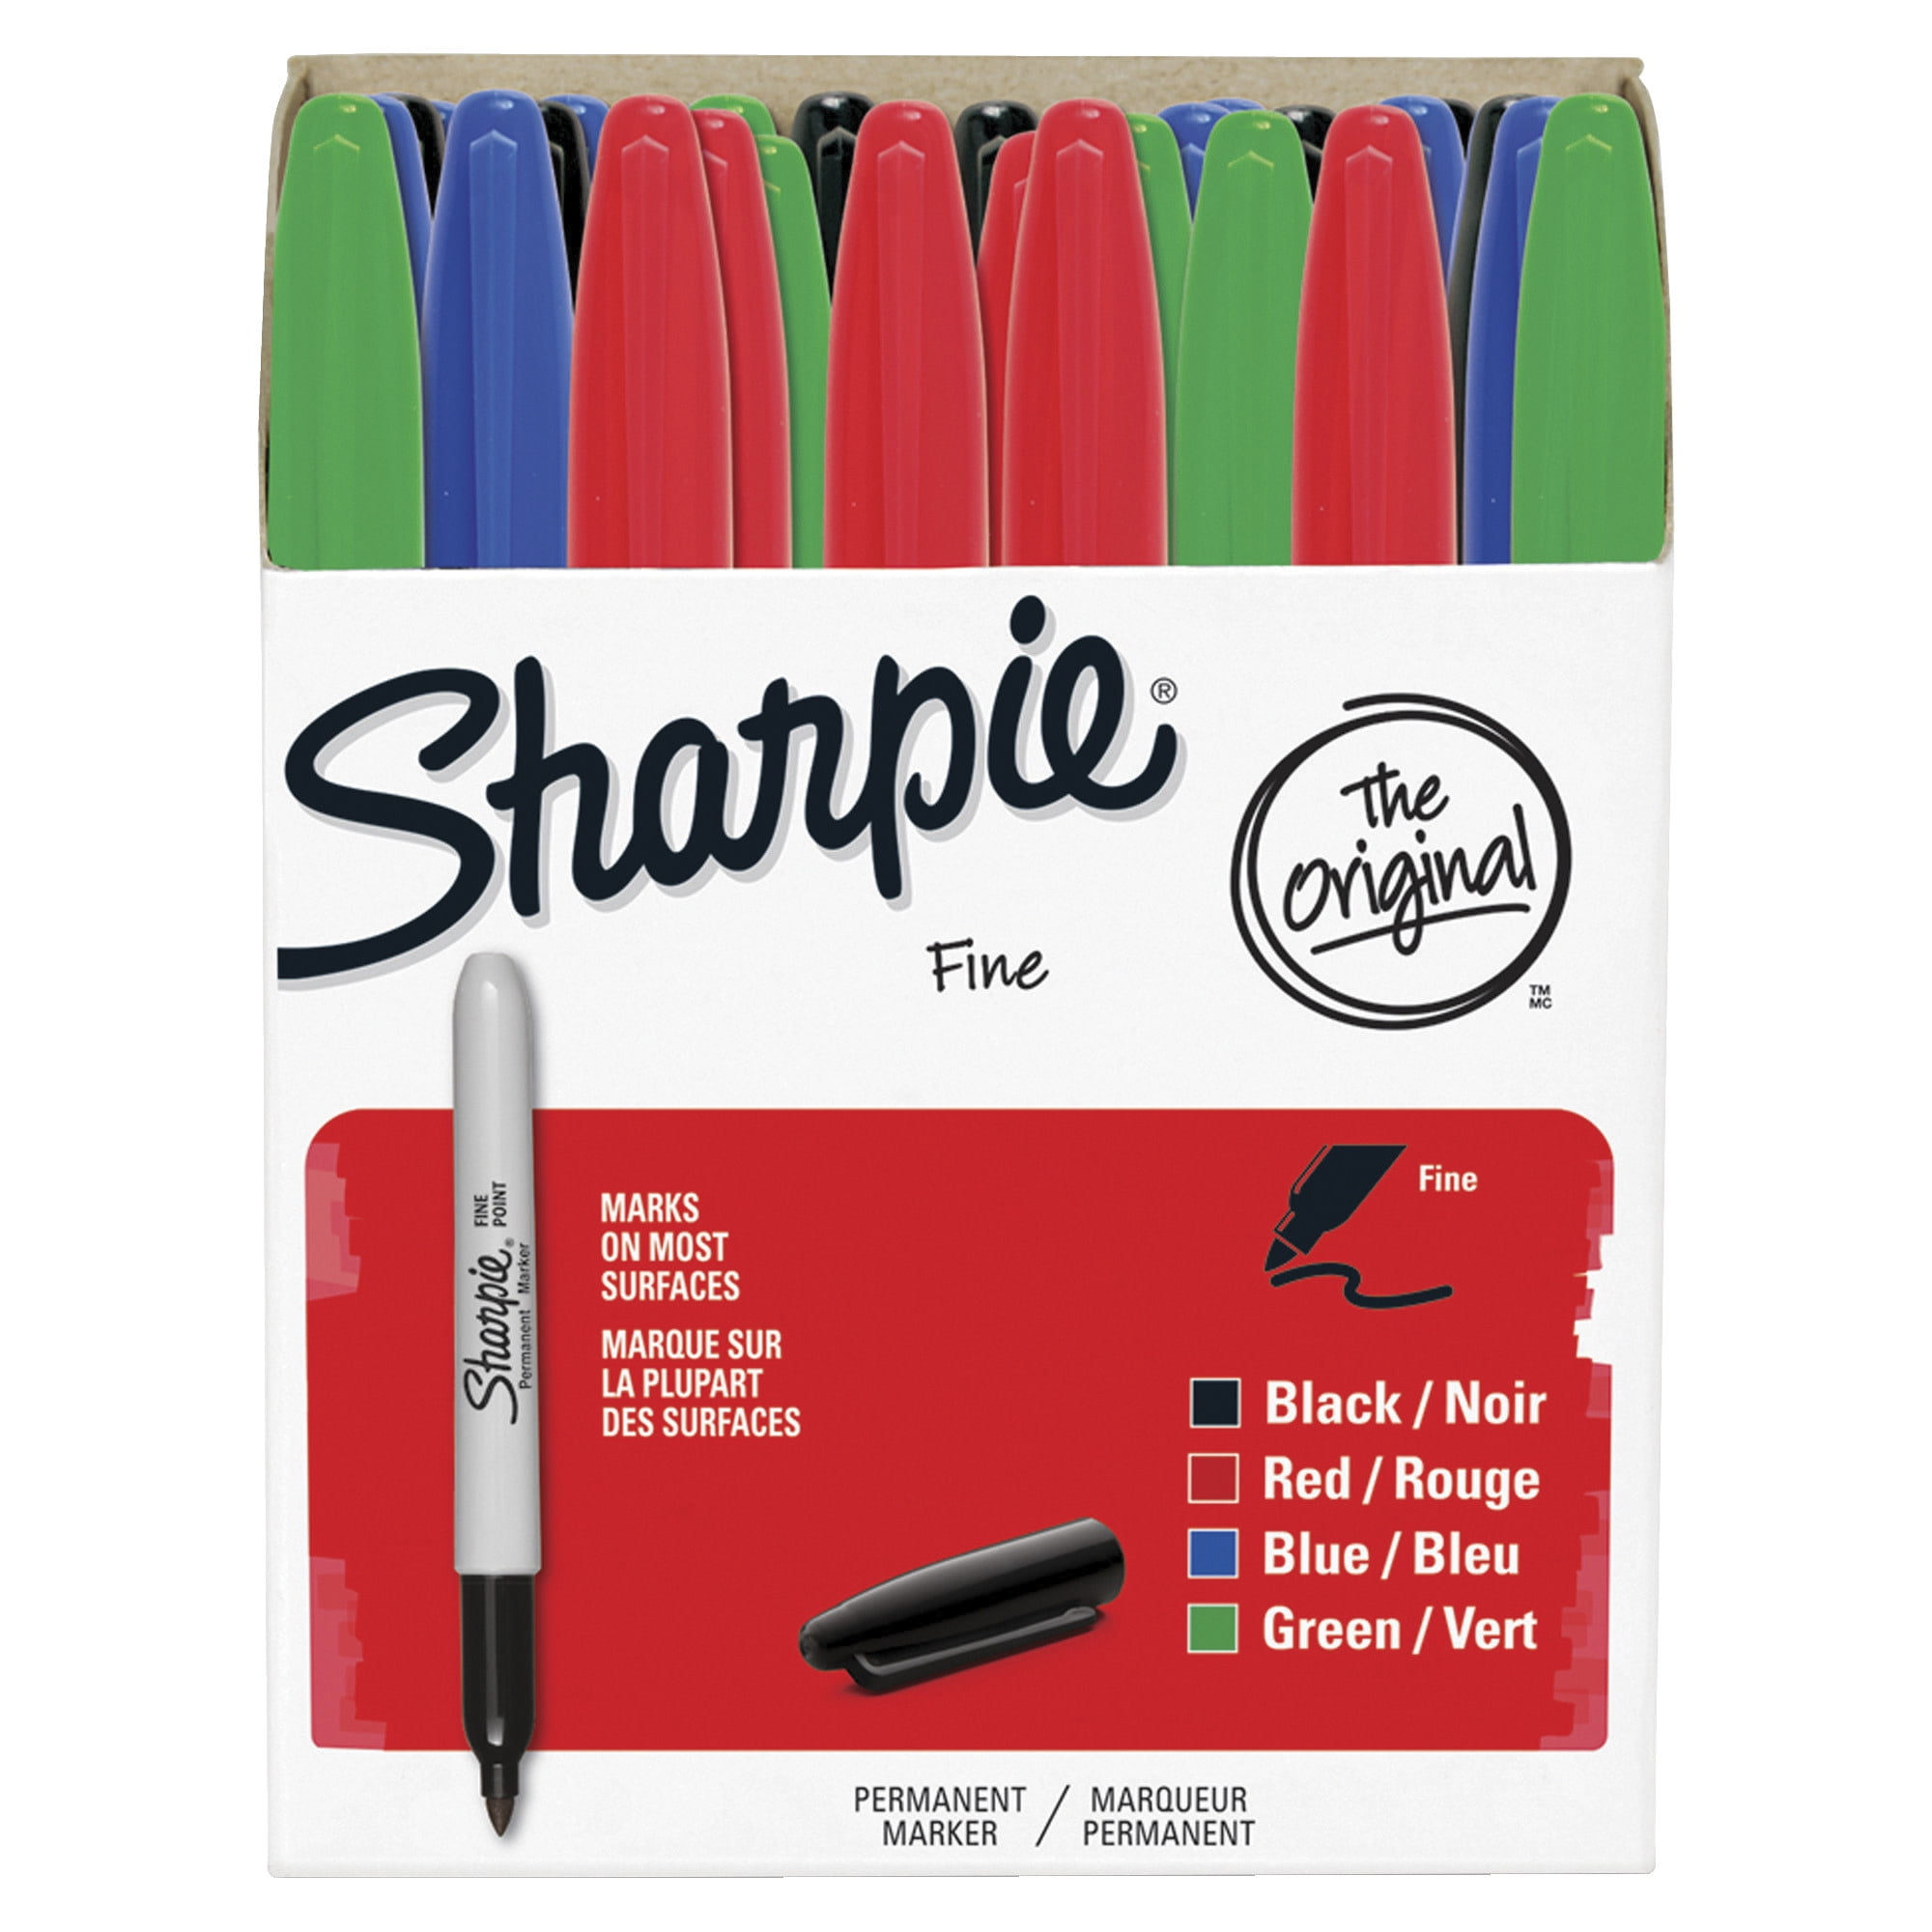 Marker Holder for Sharpie Permanent Markers | Side Mount 4 or 8 regular  Sharpie pens | Marker organizer